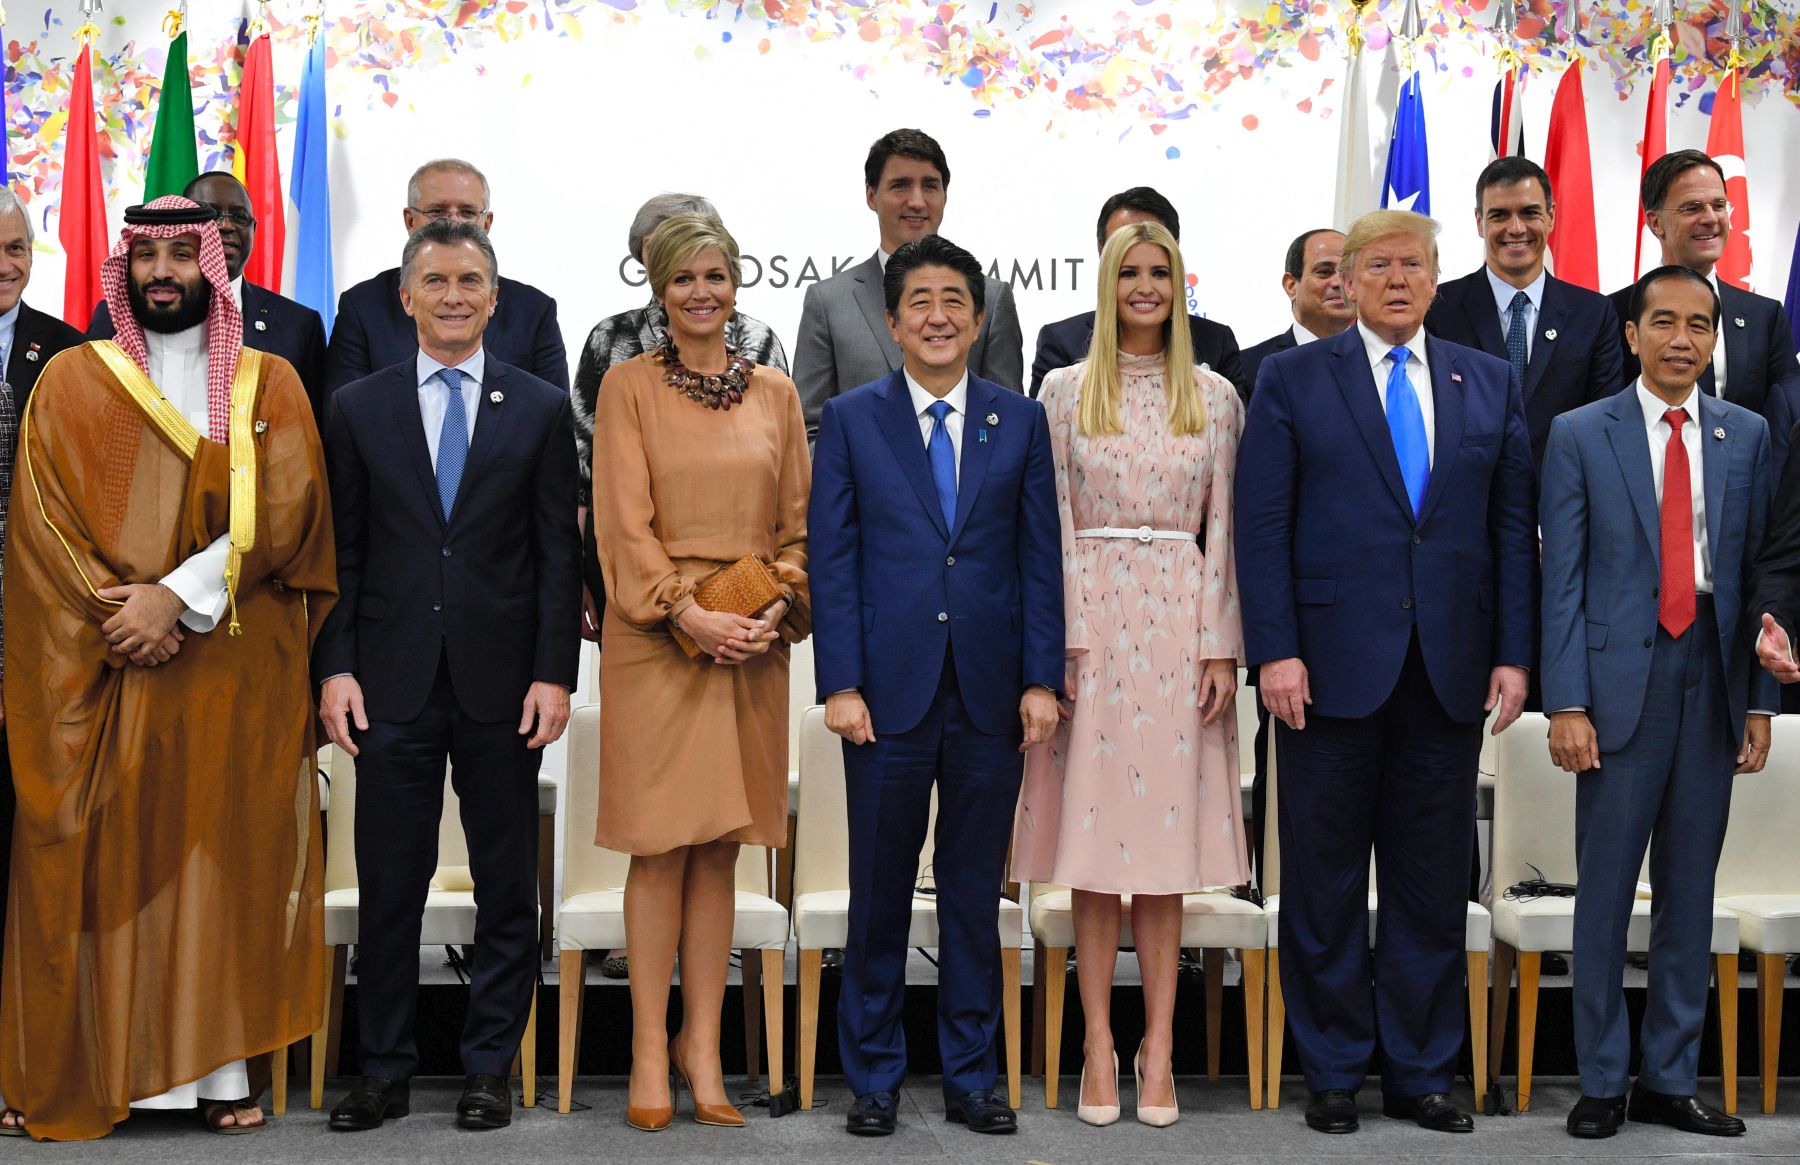 Саммит большой двадцатки где. G20 Summit. Саммит g20 2019. Страны большой двадцатки g20. Иванка Трамп на саммите g20.